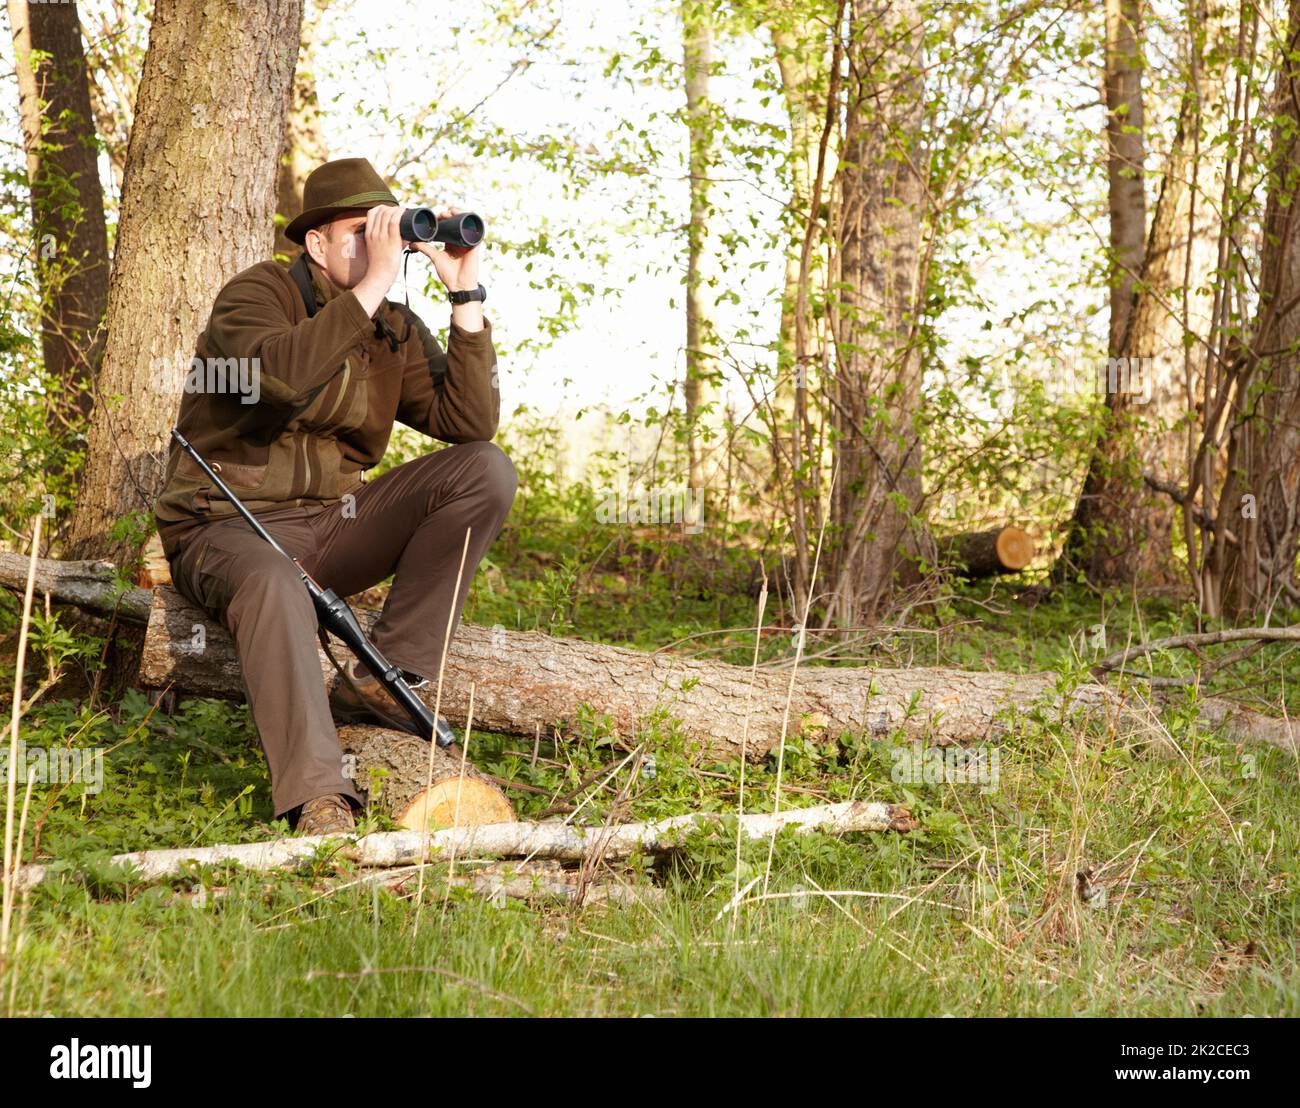 Wildtierjagd erfordert Geduld. Ein Wildhüter, der durch sein Fernglas schaut, während er auf einem Baumstamm sitzt. Stockfoto